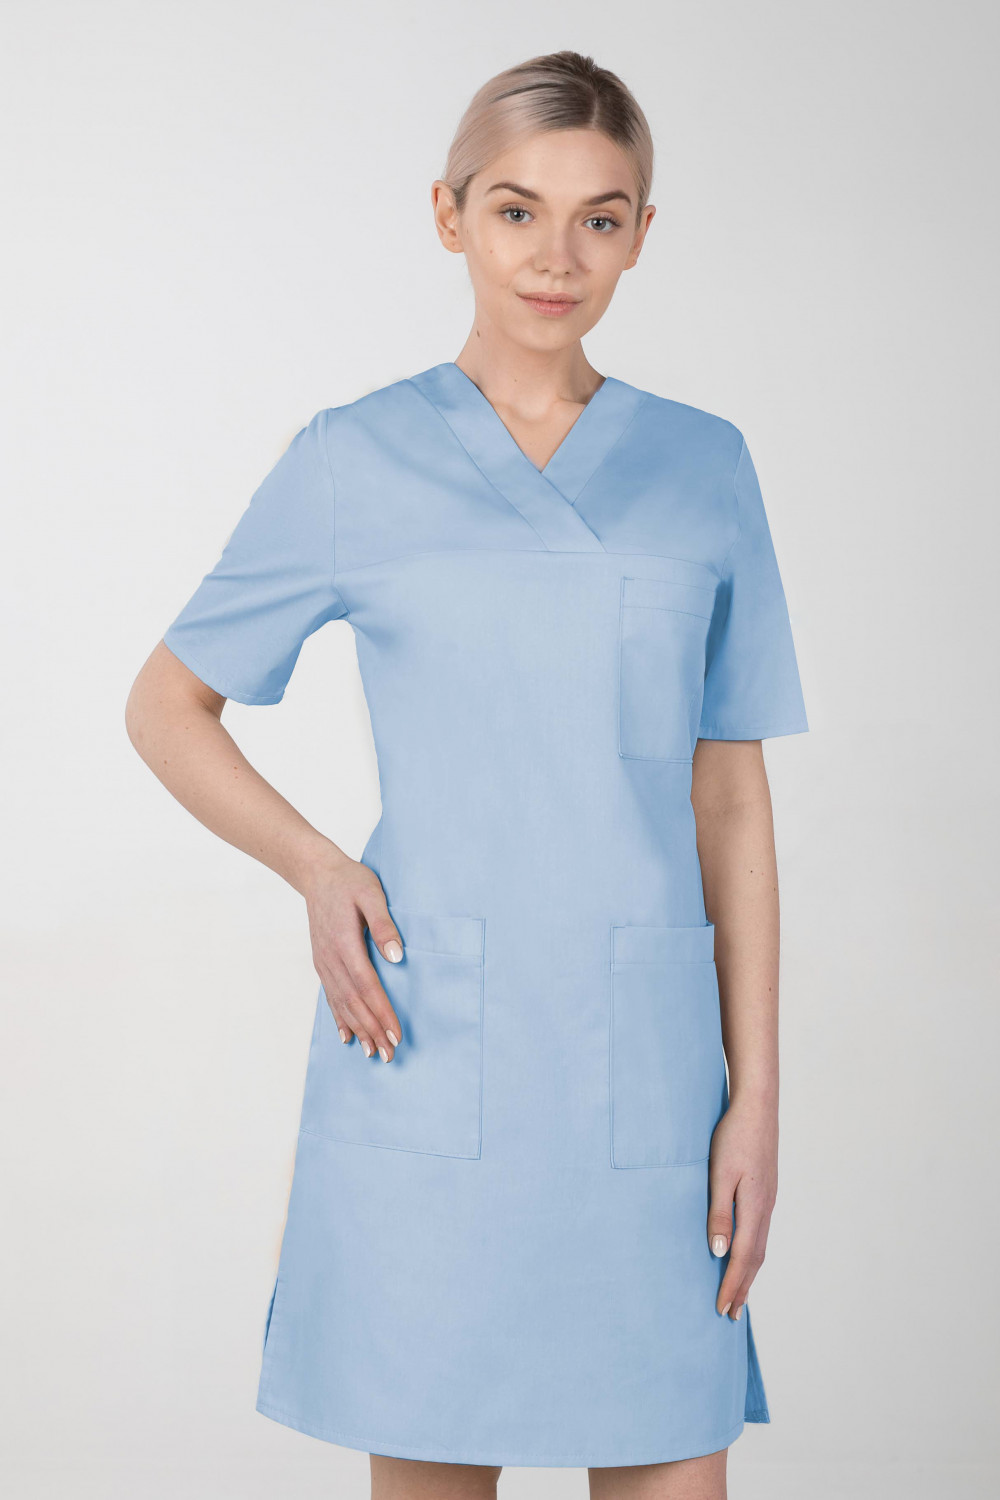 M-076F Sukienka medyczna wiązana  fartuch medyczny kolor błękit